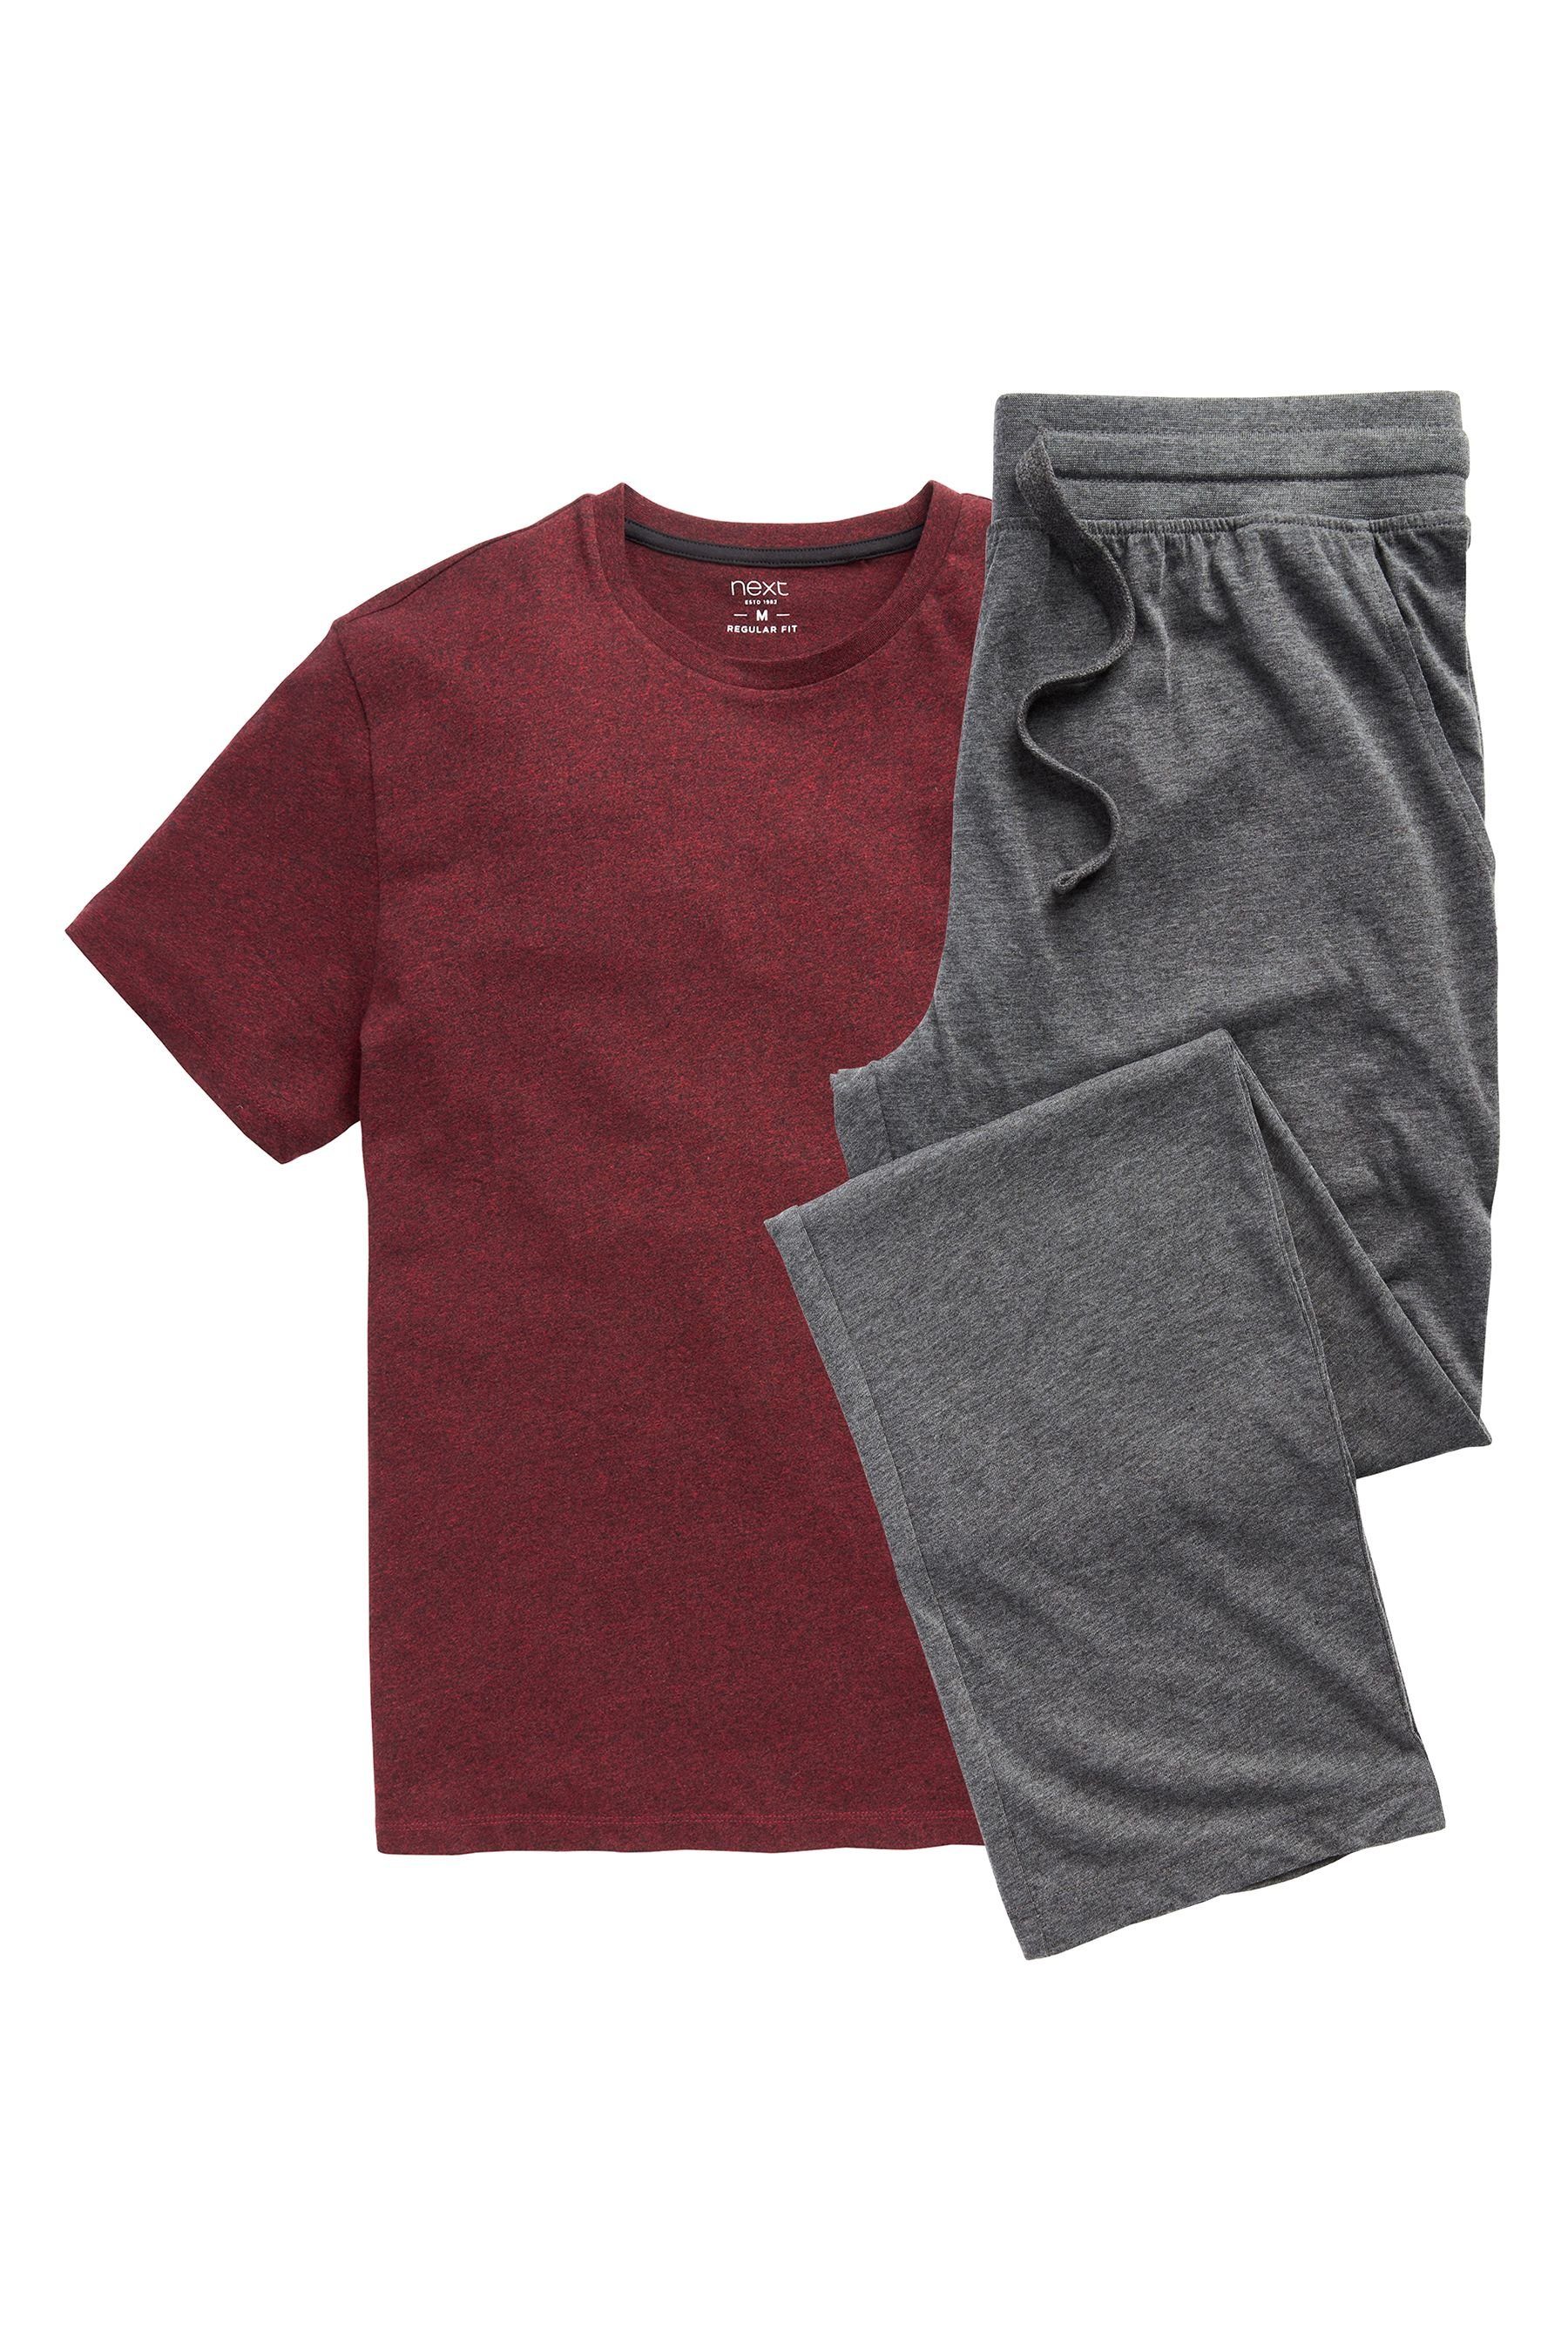 Next Pyjama (2 tlg) Dark Red/Charcoal Grey